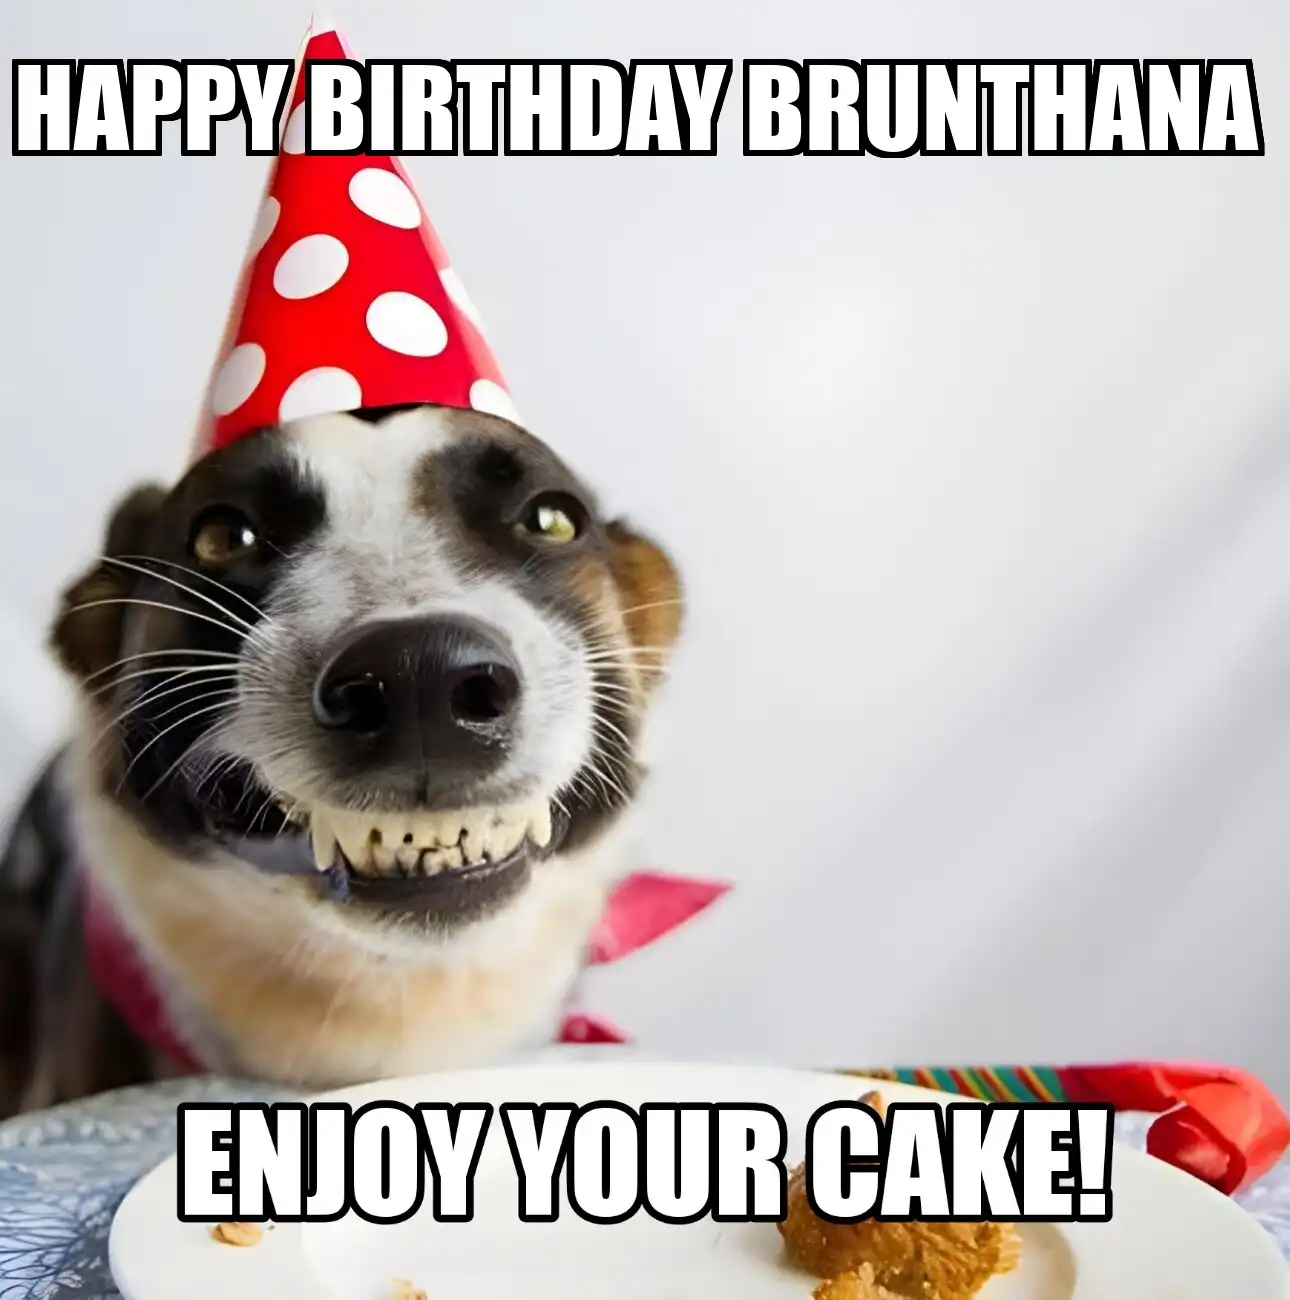 Happy Birthday Brunthana Enjoy Your Cake Dog Meme